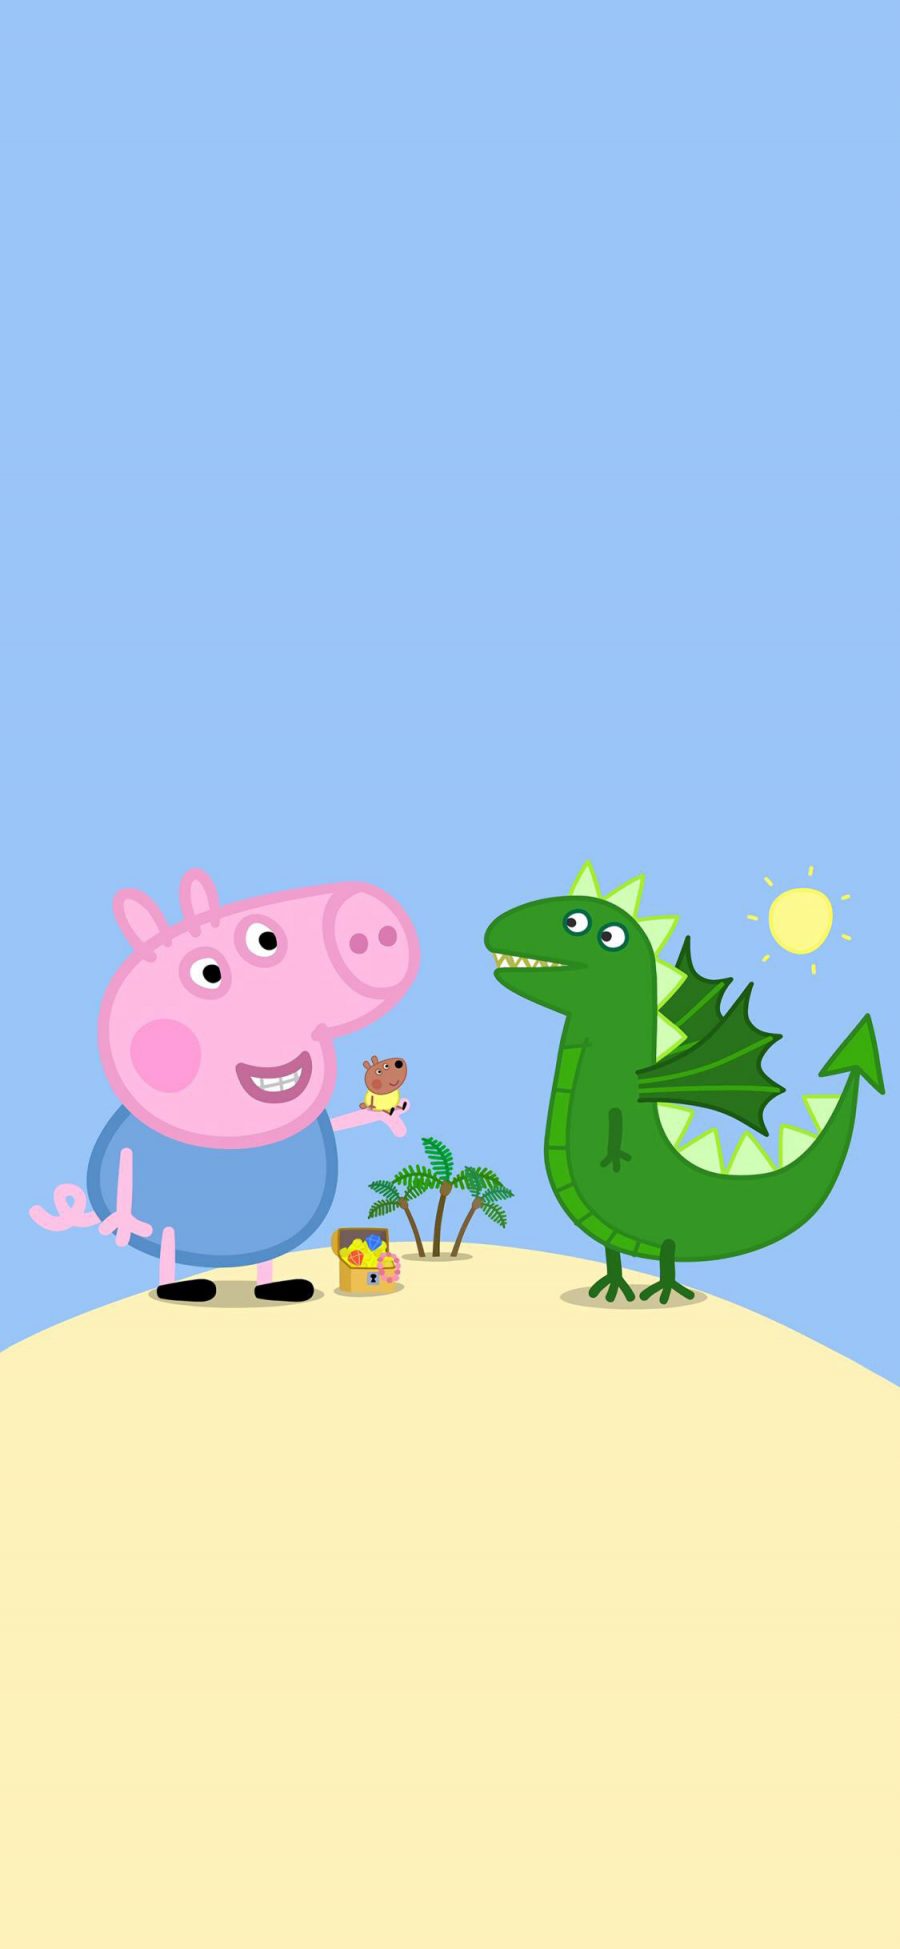 [2436×1125]小猪佩奇 动画 卡通 可爱 蓝色 恐龙 苹果手机动漫壁纸图片